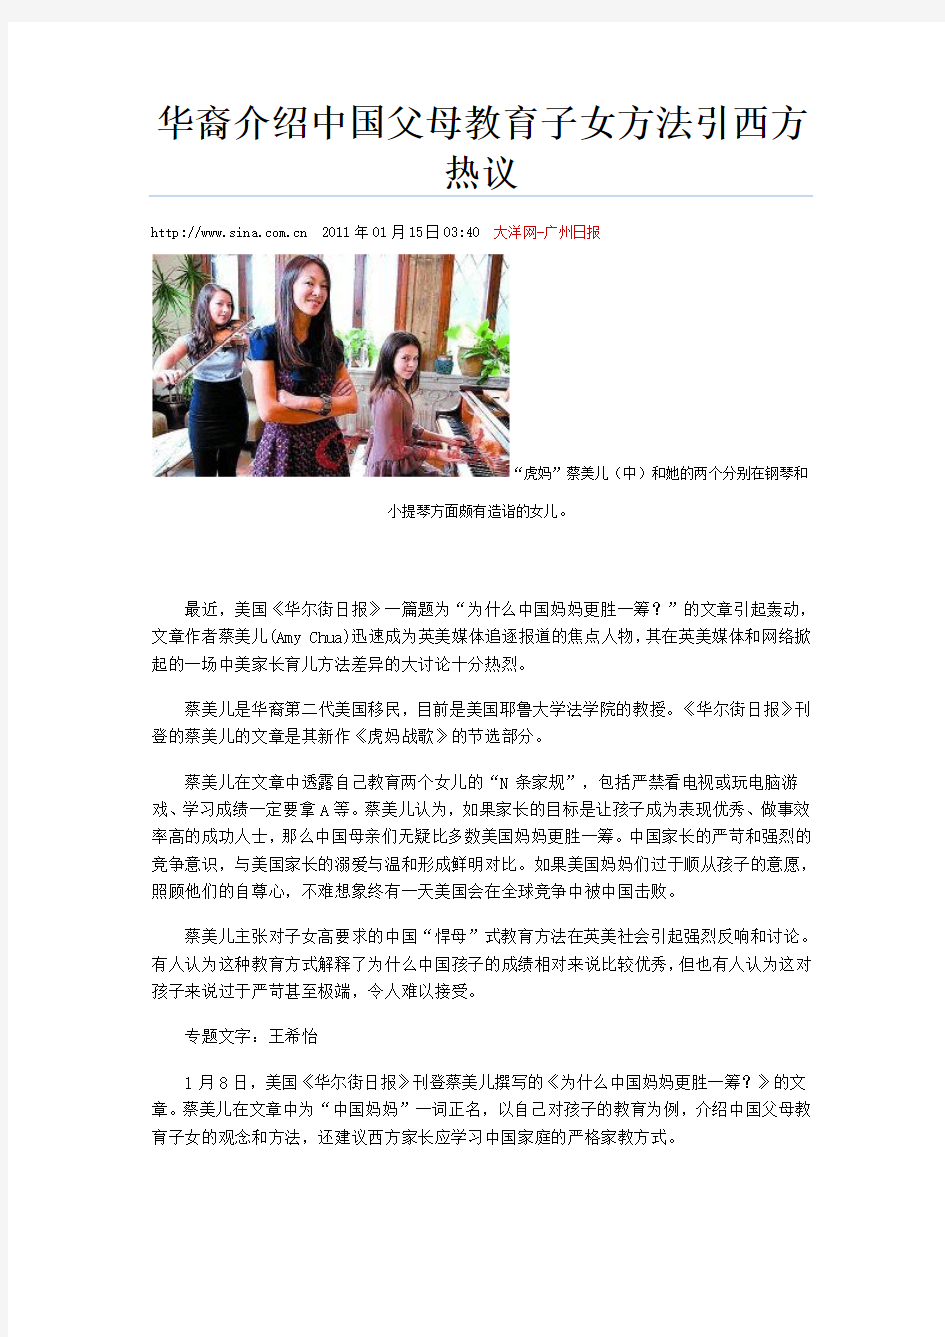 华裔介绍中国父母教育子女方法引西方热议